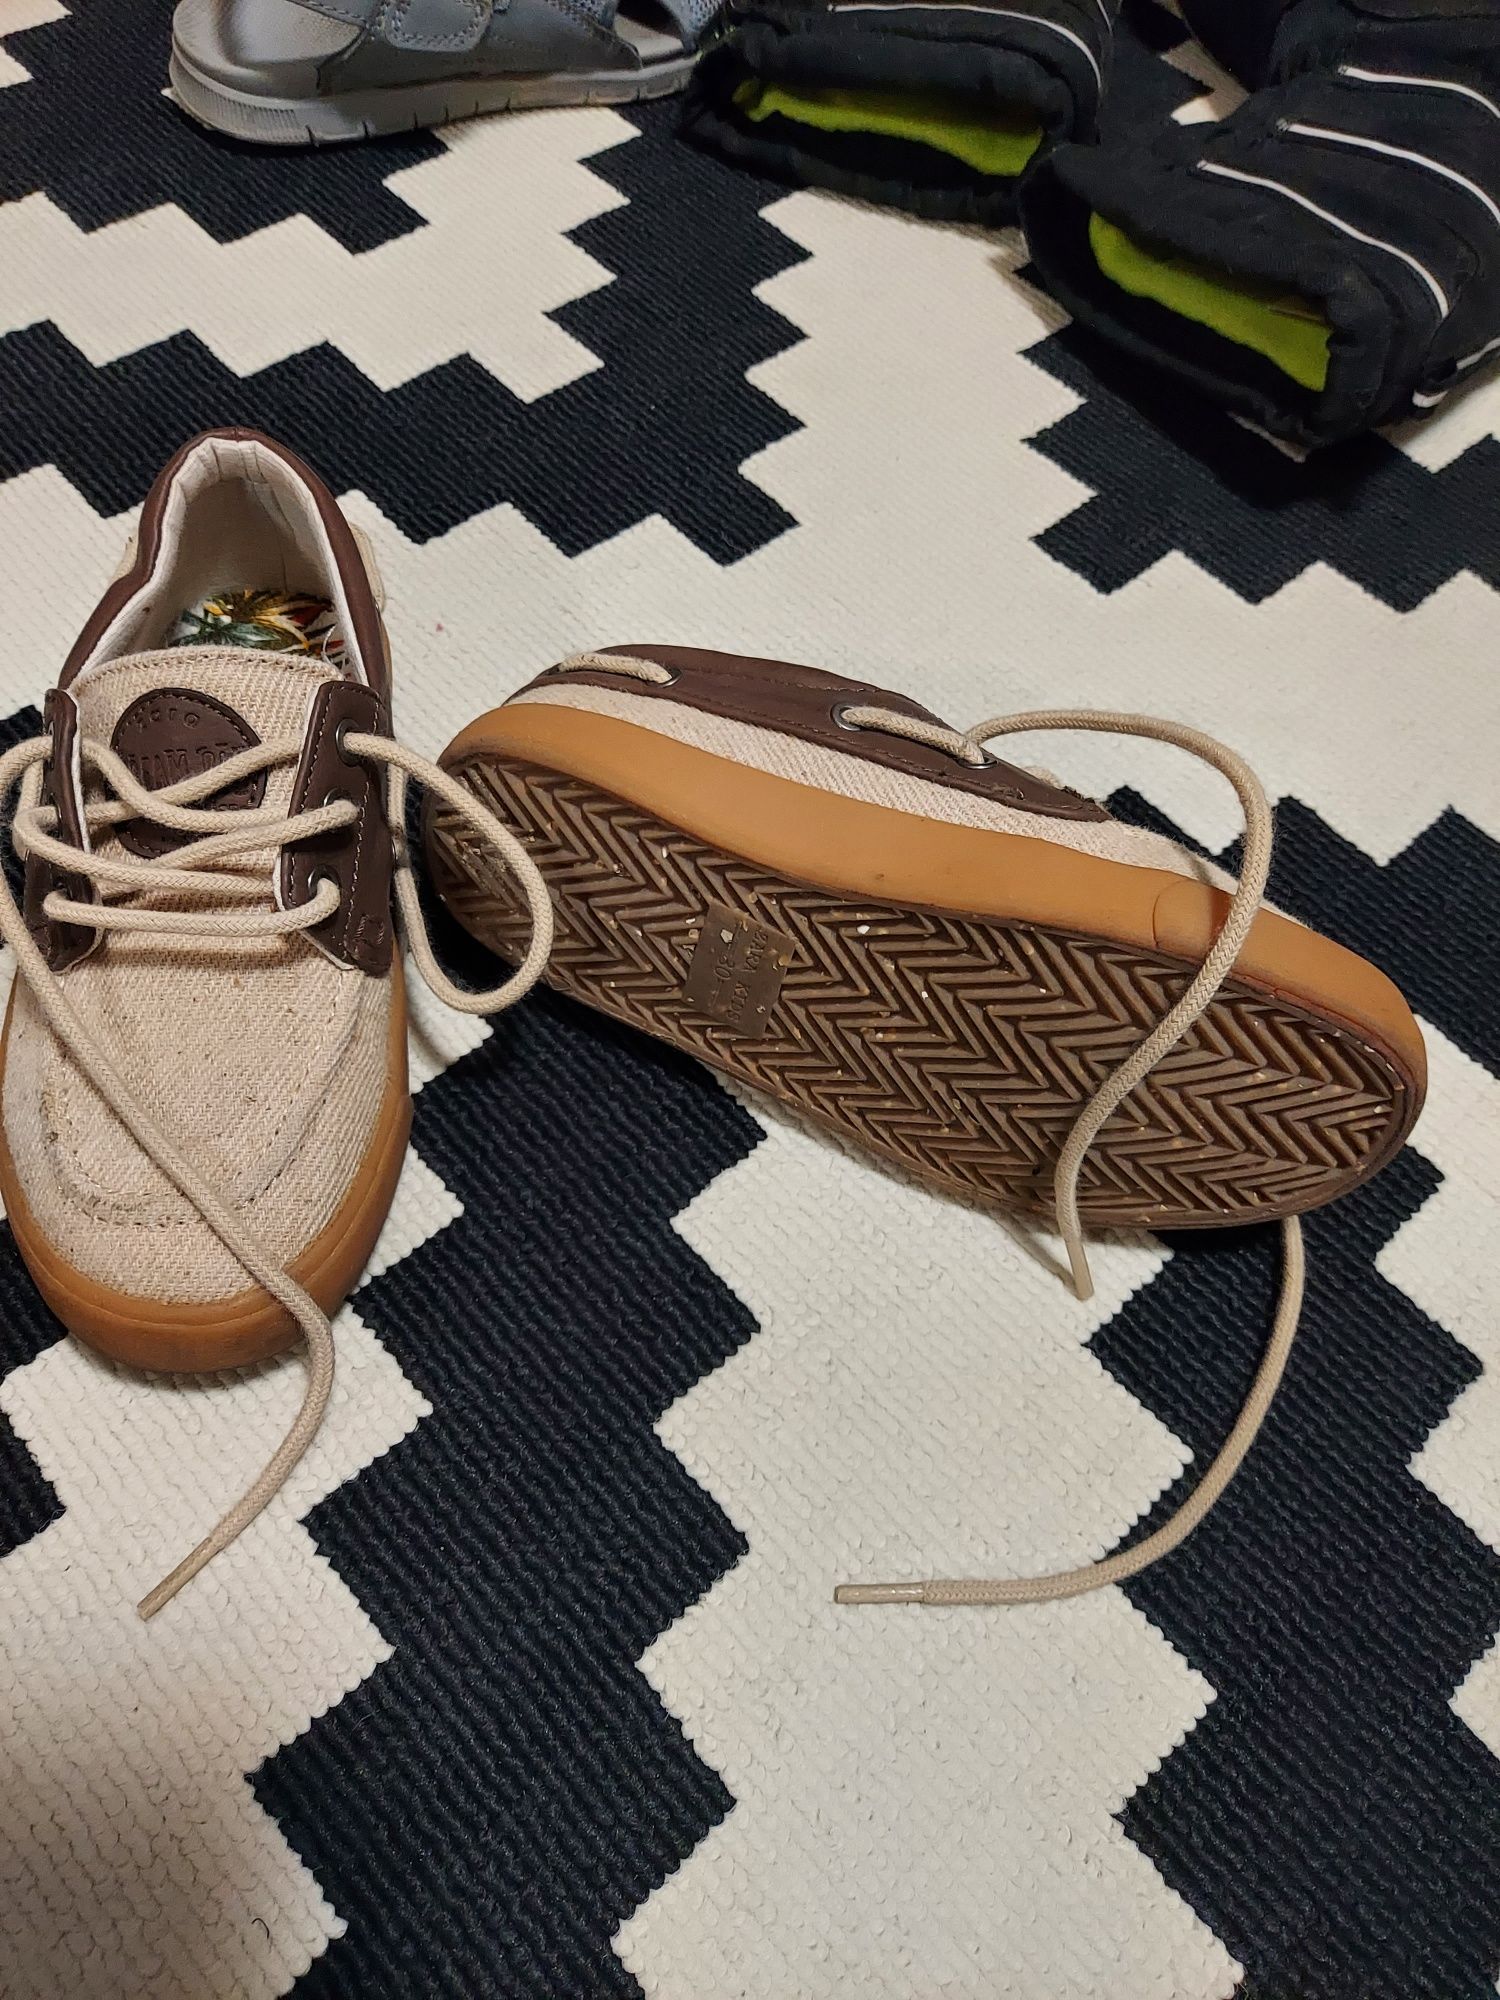 Pantofi/adidași baieti Zara, marime 30